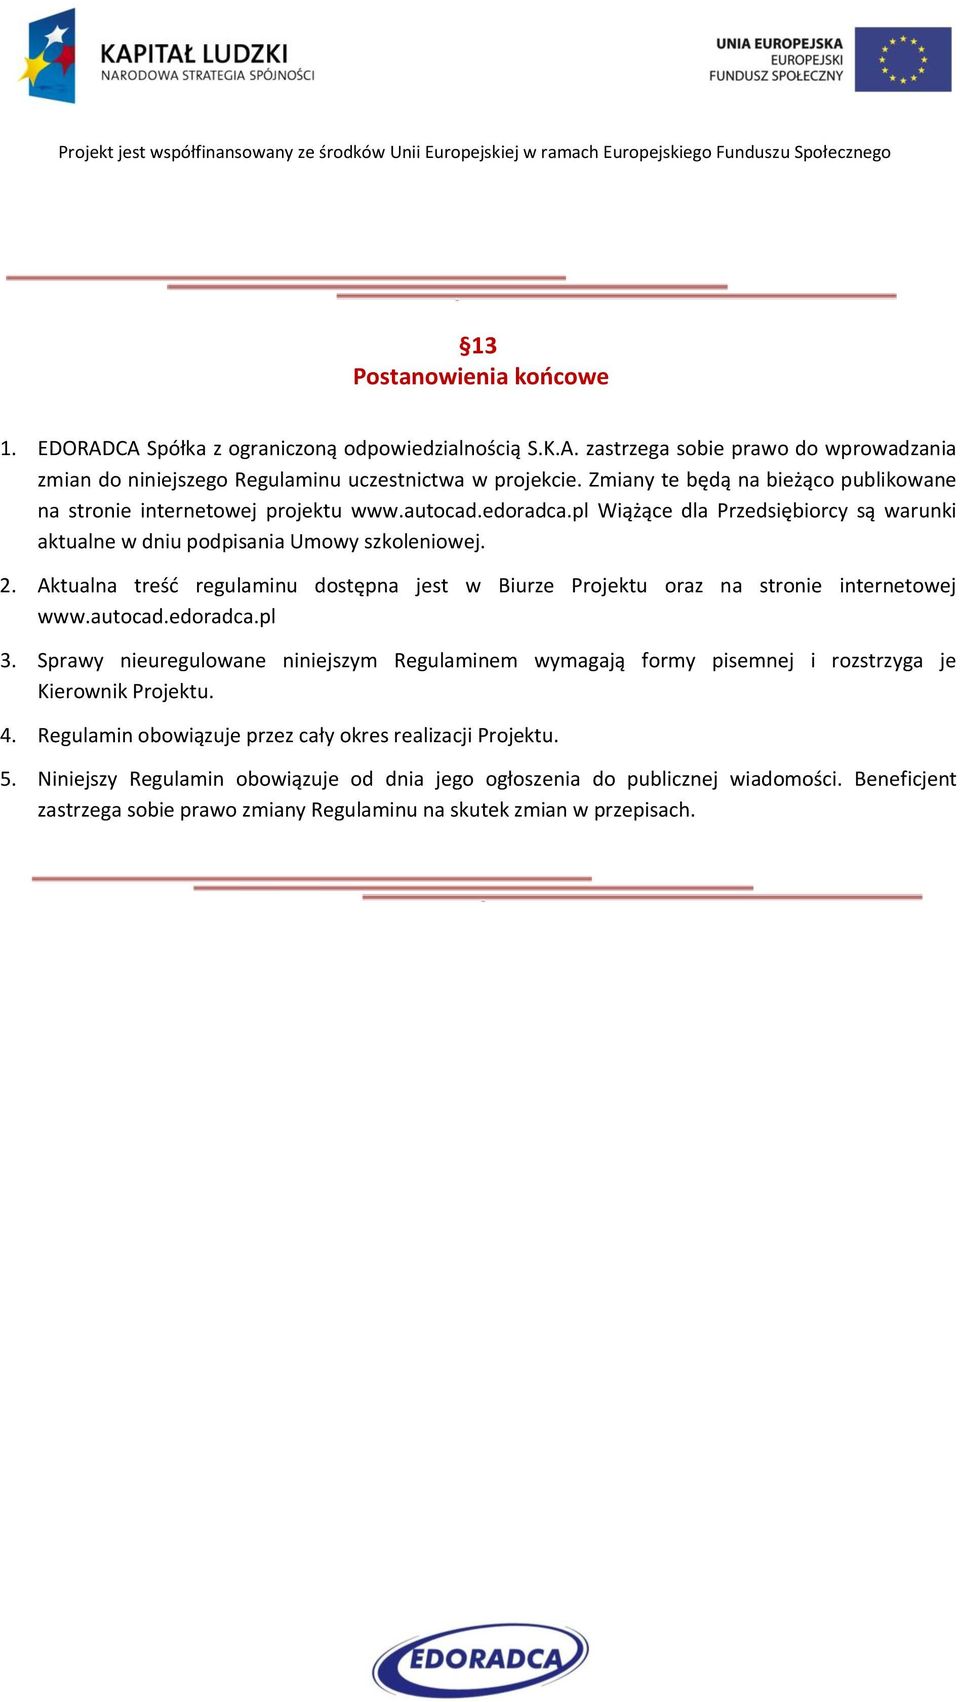 Aktualna treść regulaminu dostępna jest w Biurze Projektu oraz na stronie internetowej www.autocad.edoradca.pl 3.